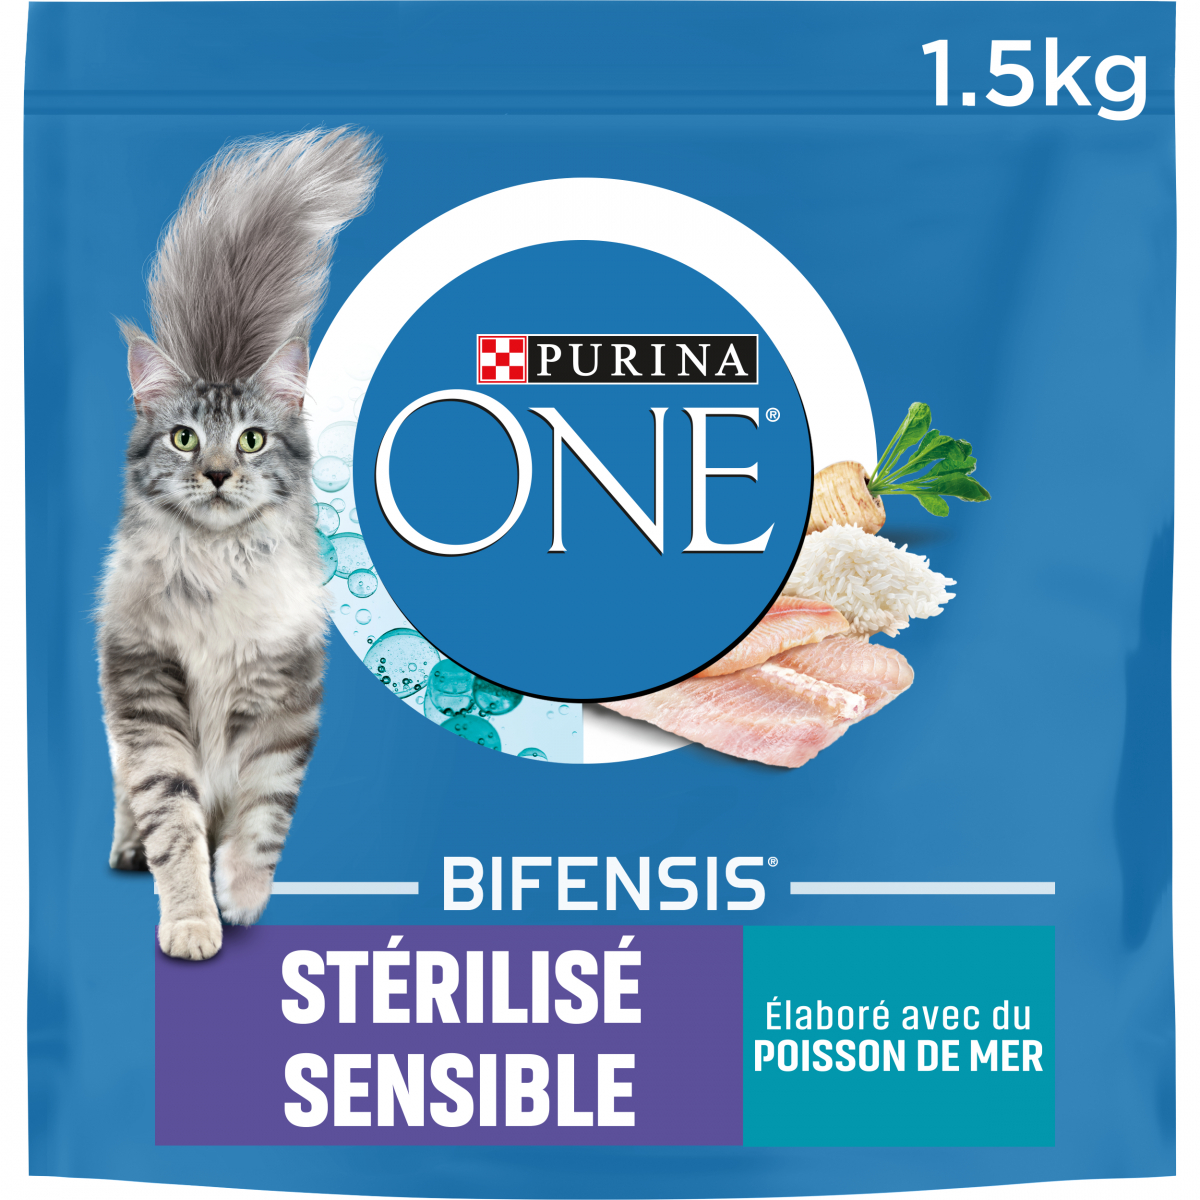 PURINA ONE Stérilisé Sensible au poissons céréales complètes pour chat